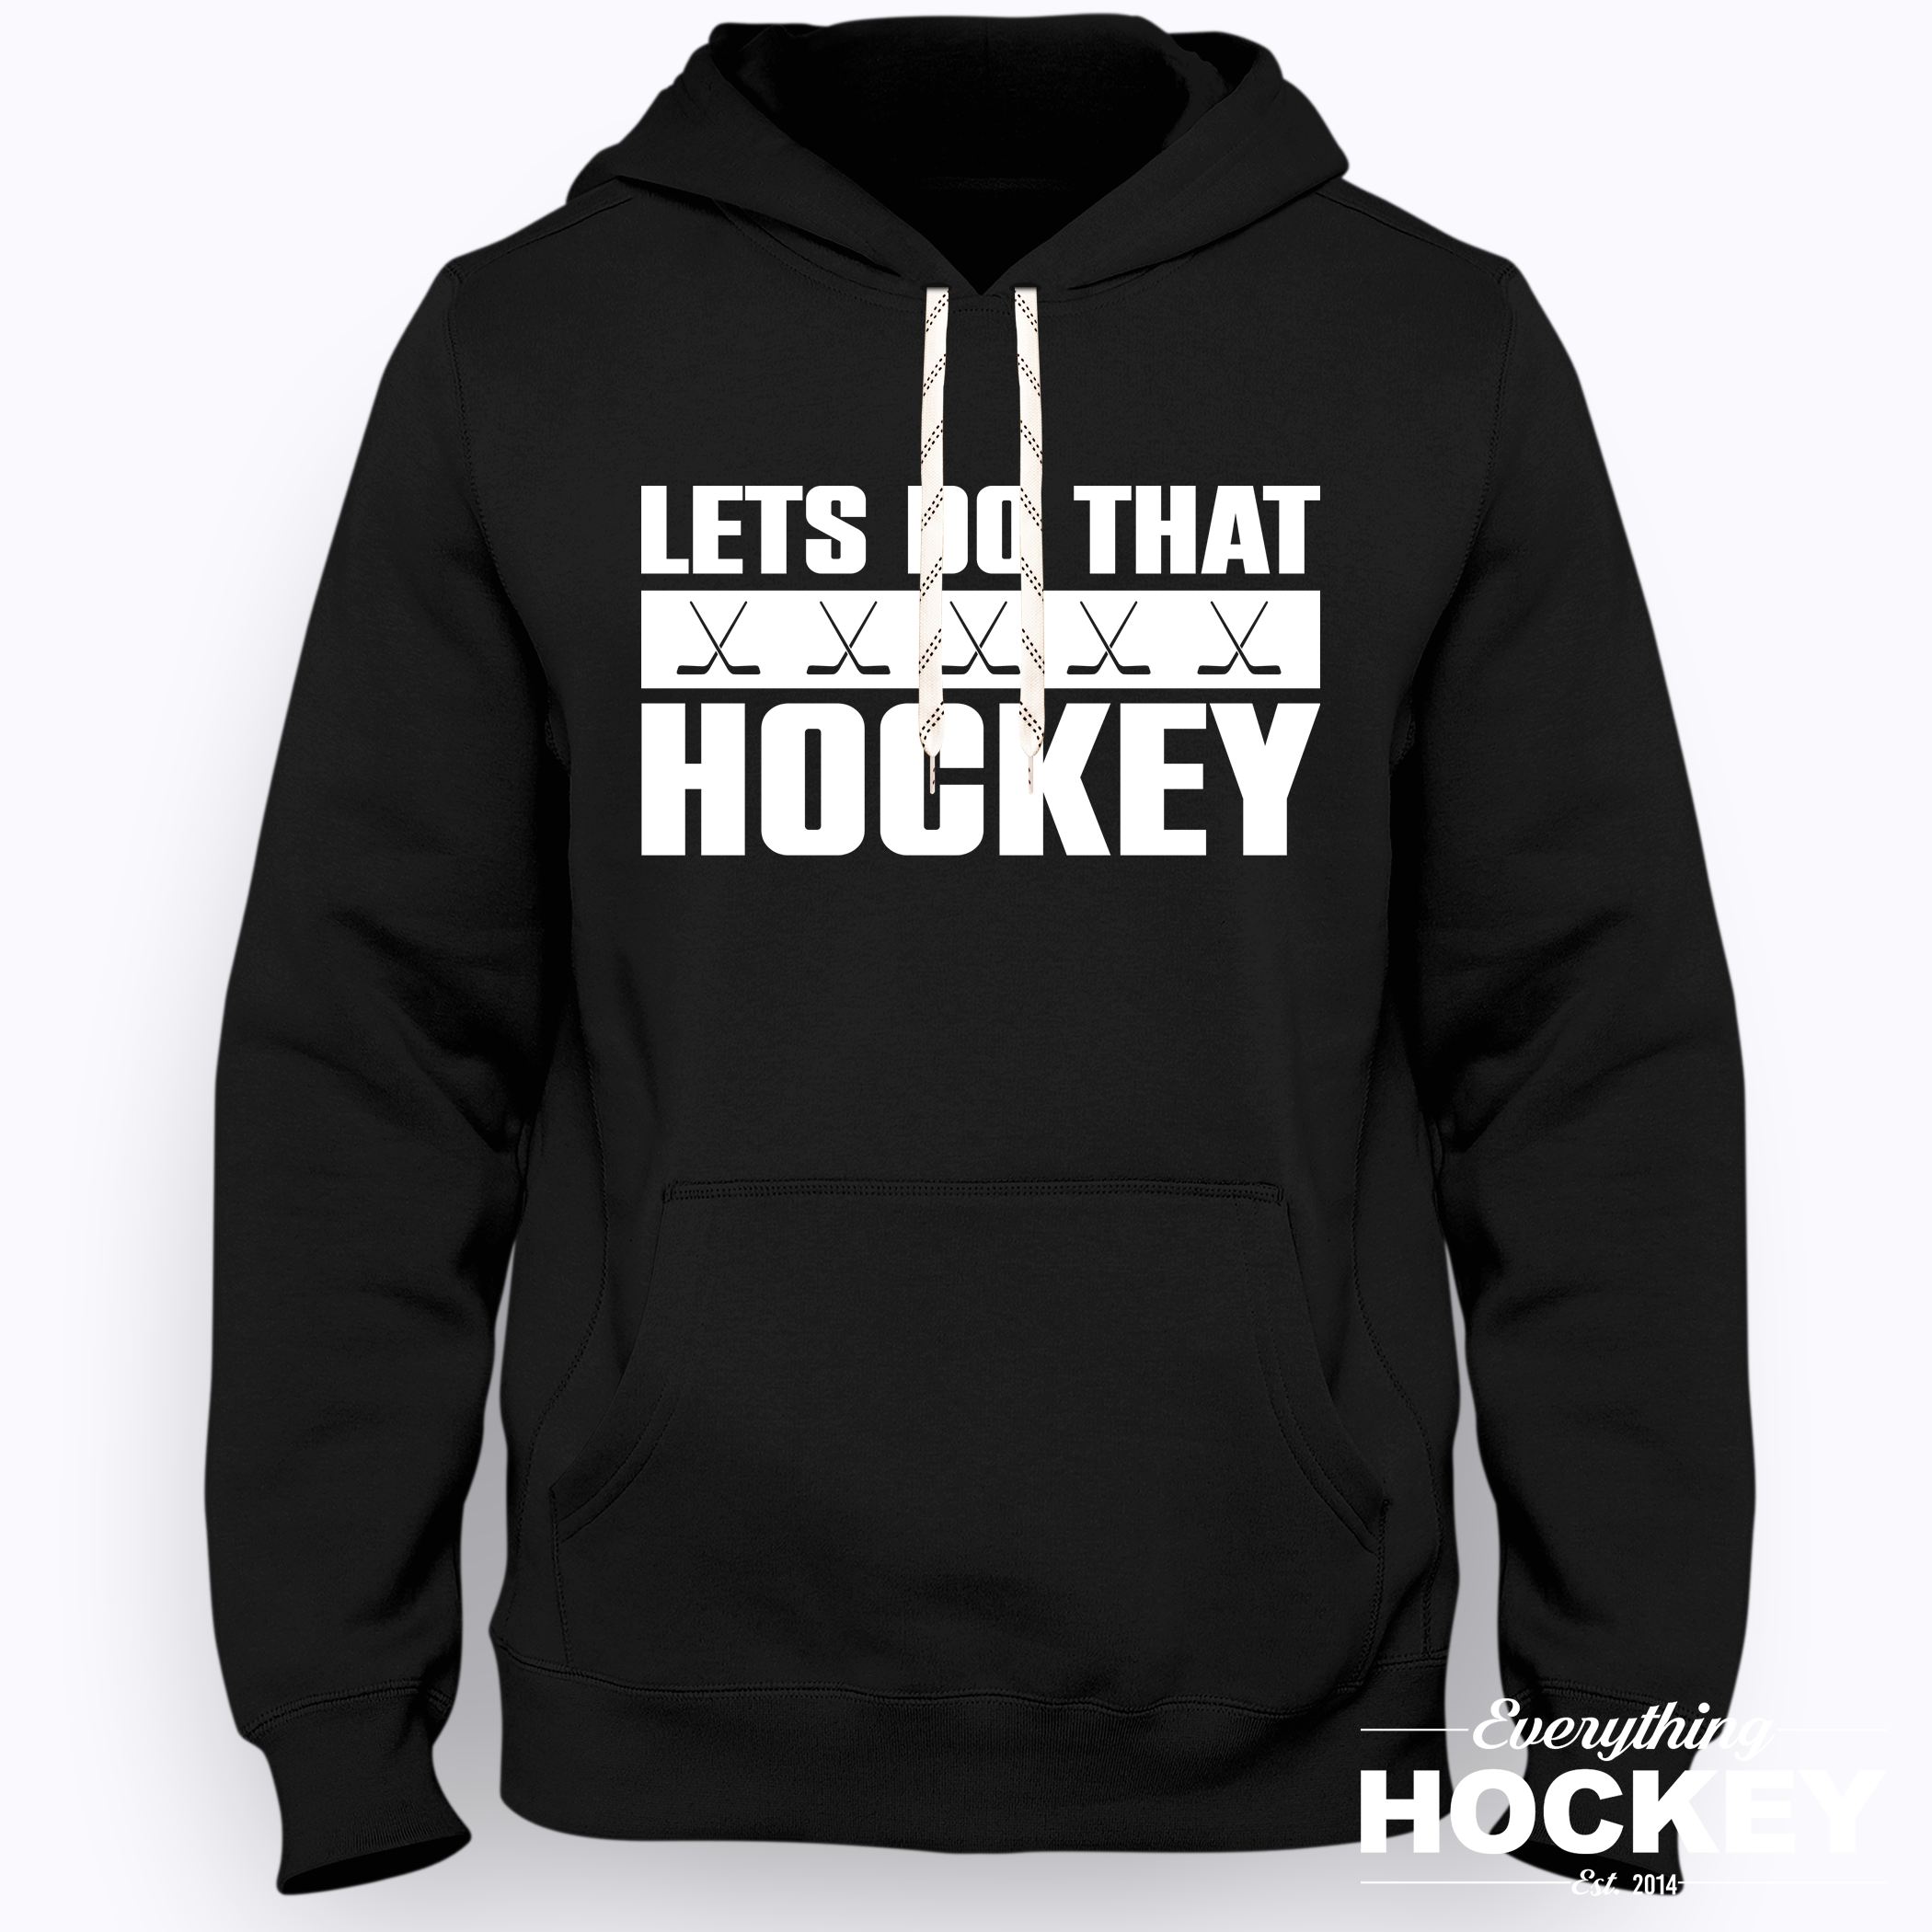 Everything Hockey - Lets Do That Hockey